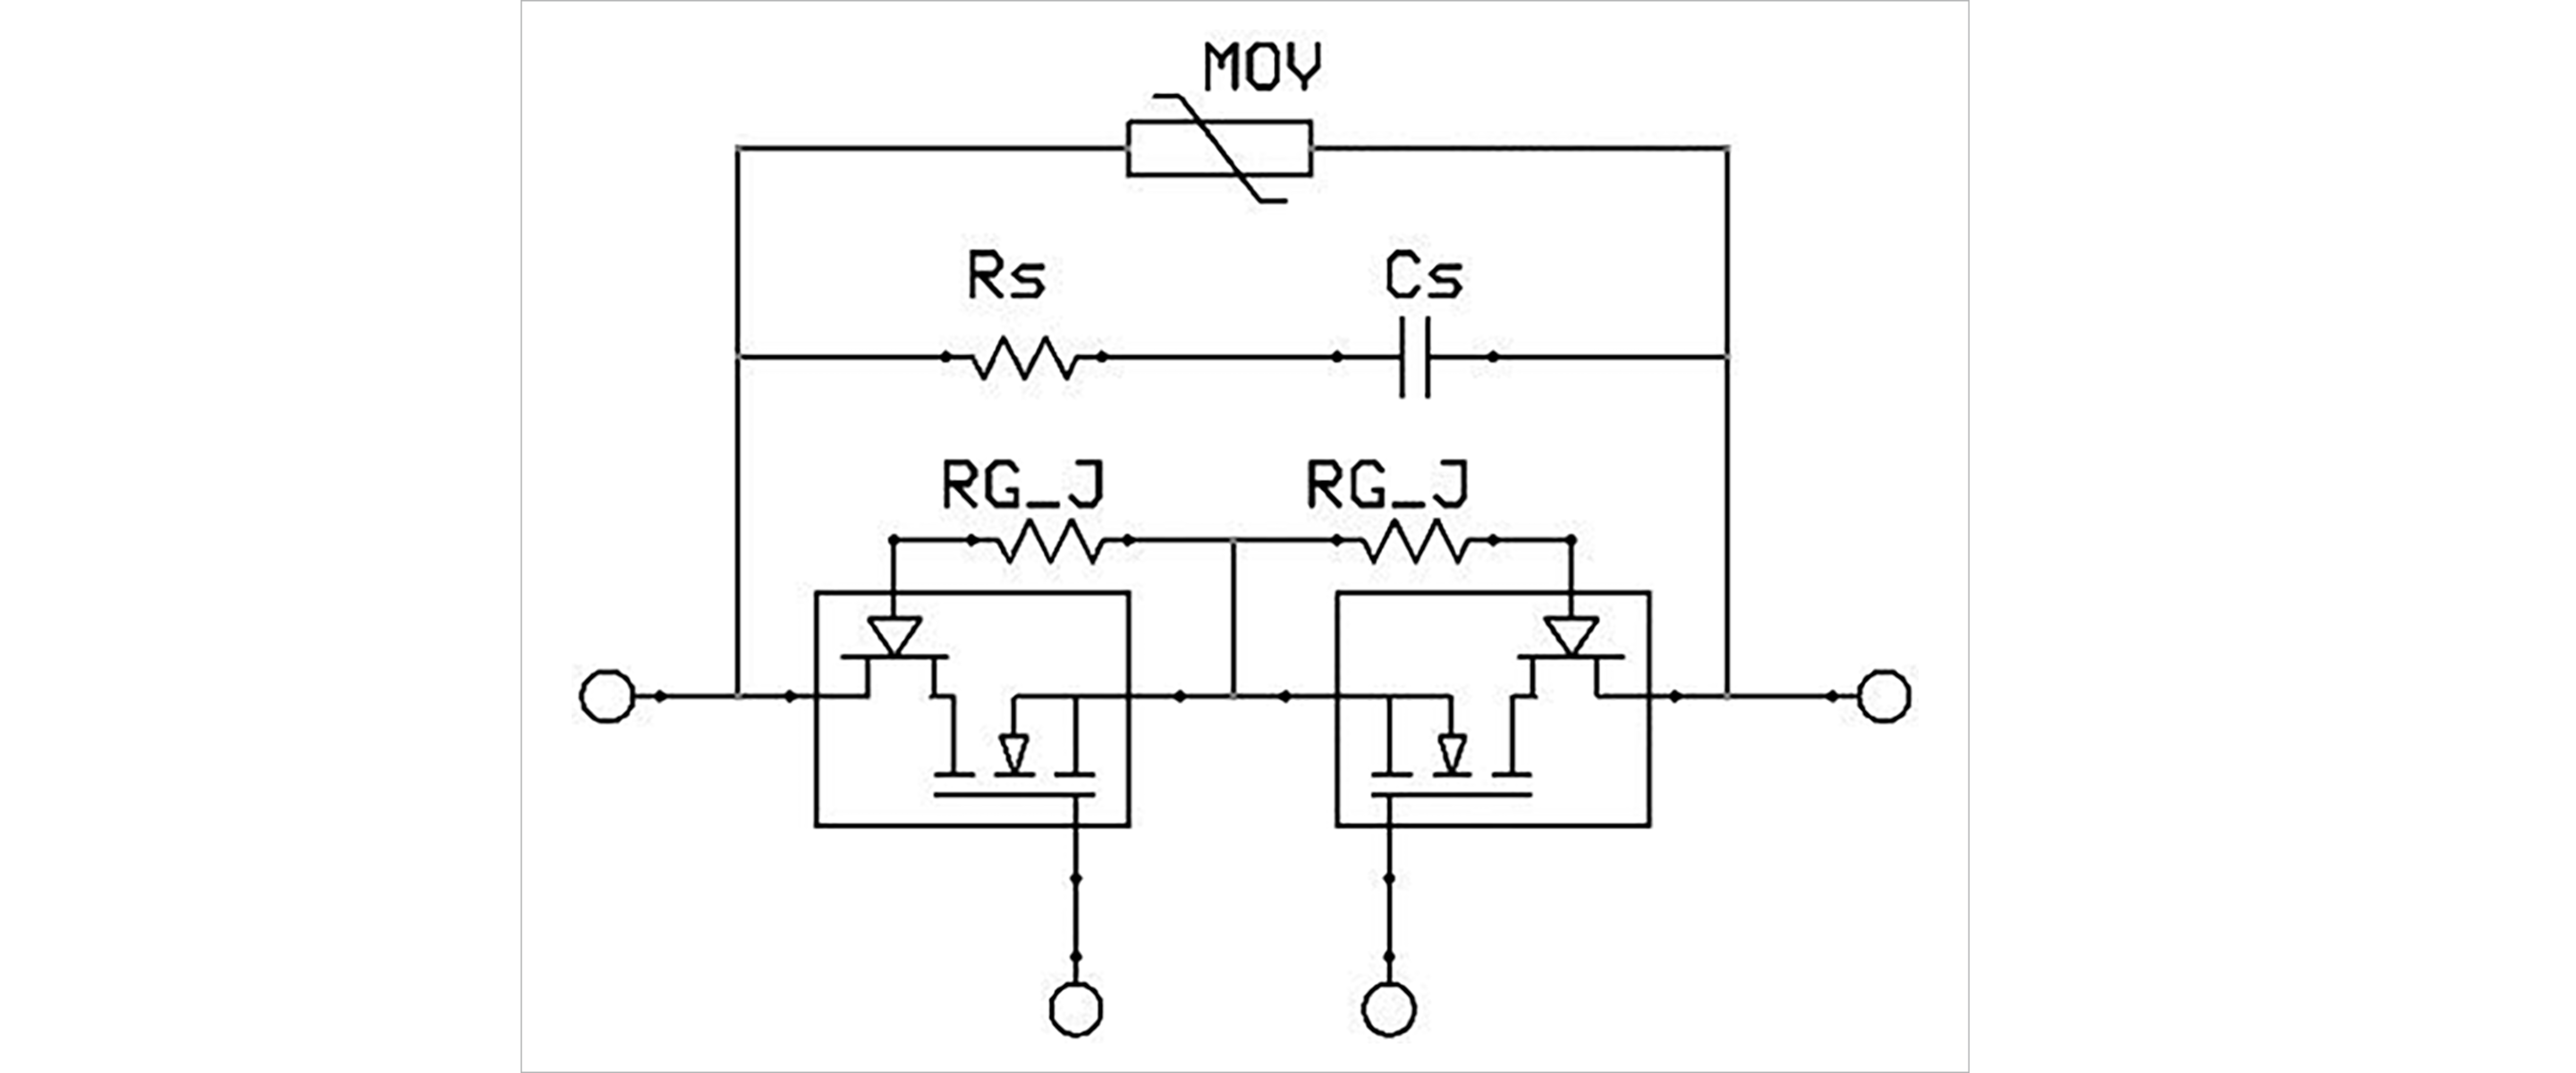 図6：ソリッドステートサーキットブレーカー(電力素子)の回路アーキテクチャー